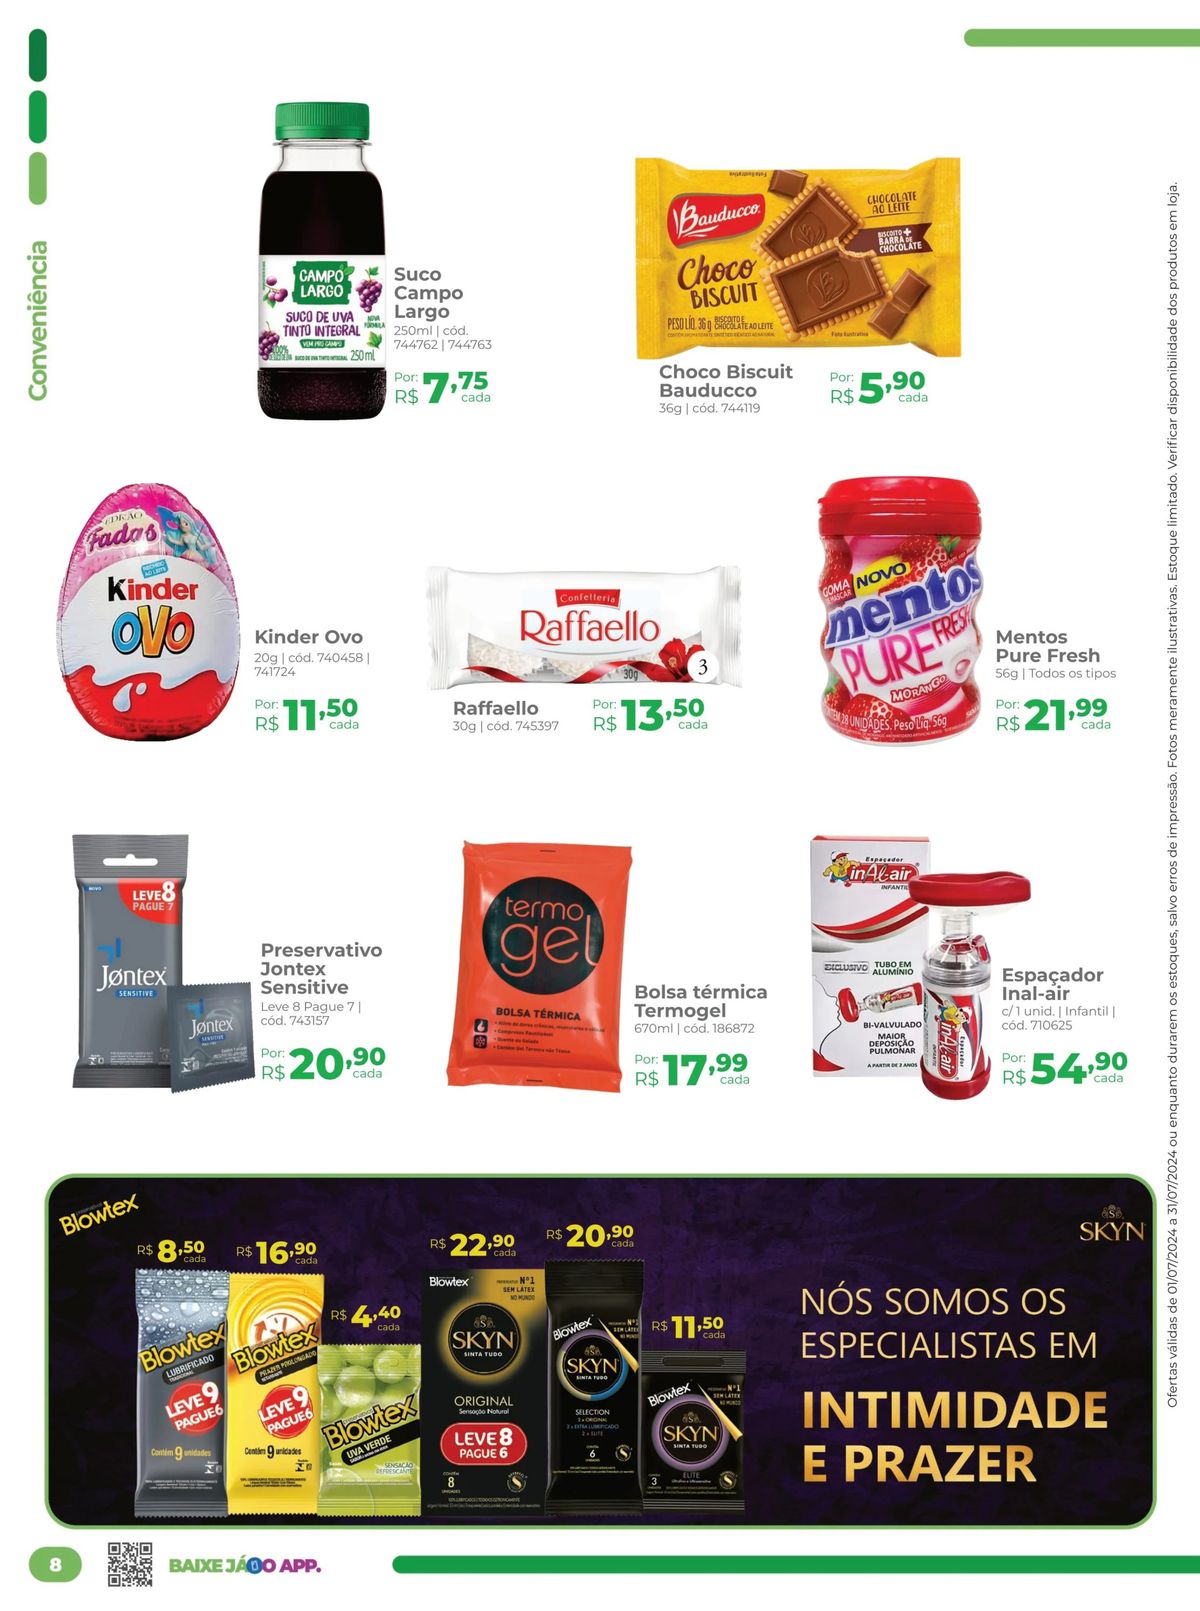 Biscoitos Bauducco com 15% de desconto e Mentos Pure Fresh por R$ 1,15